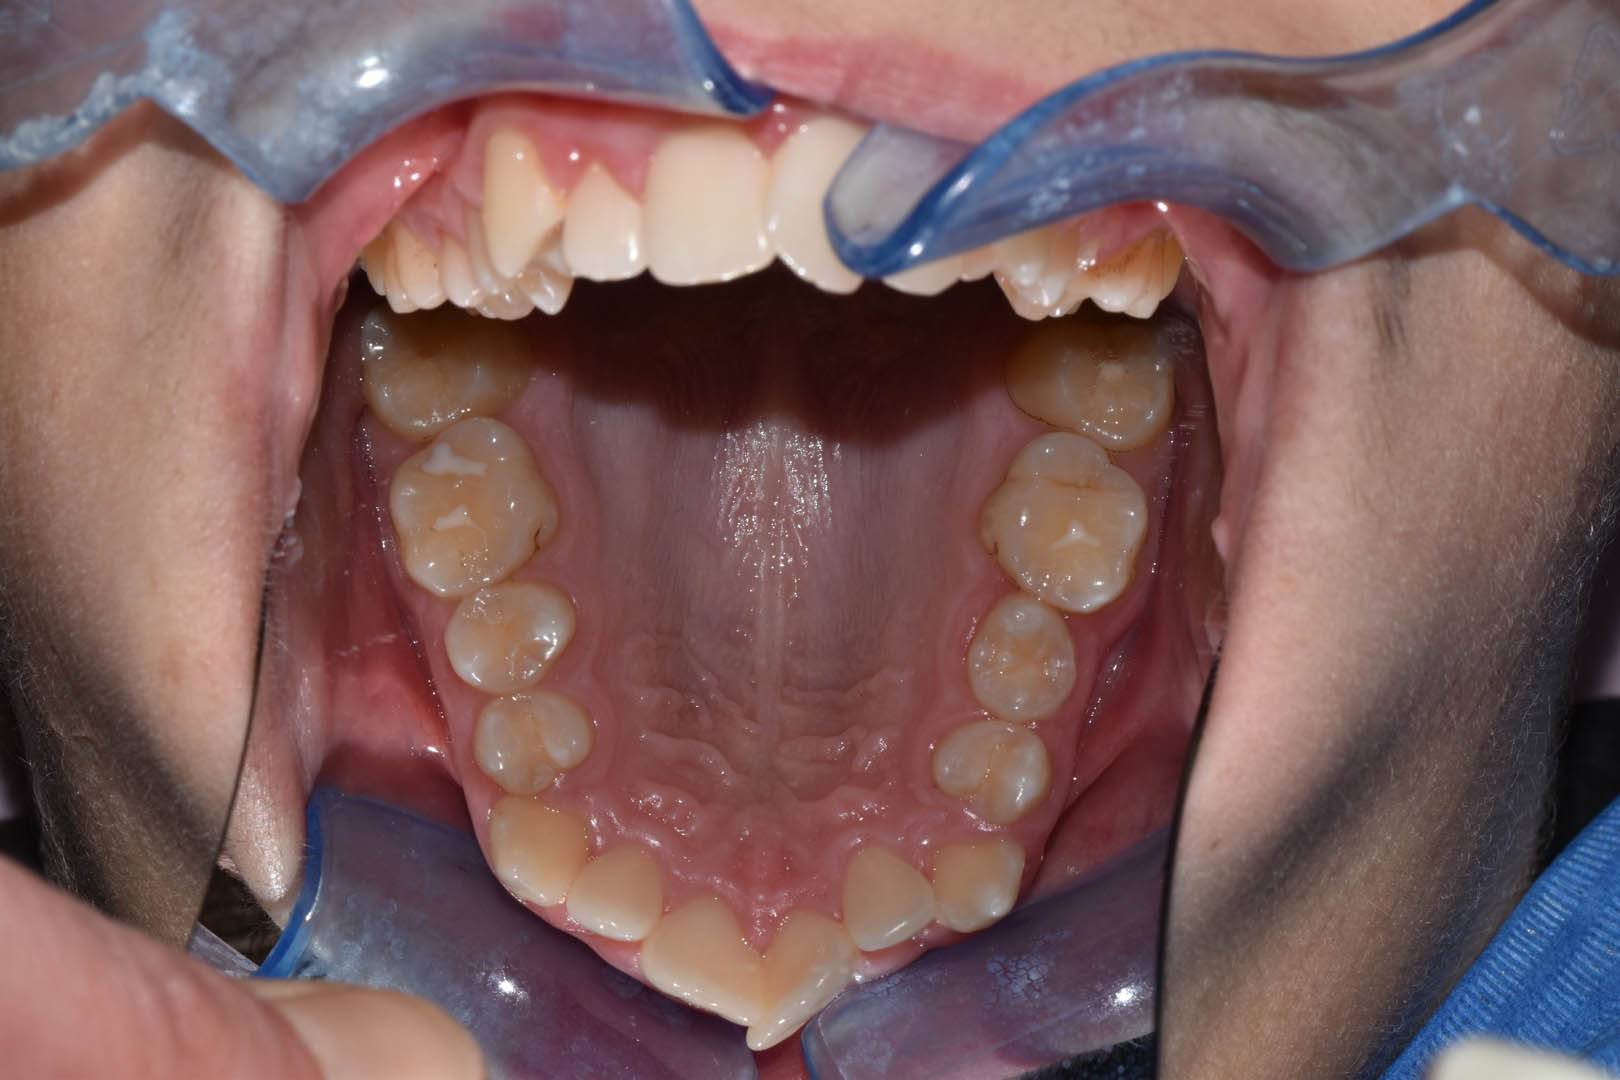 odontocentro-monza-brianza-casi-clinici-ortodonzia-fissa-20-mesi (6)